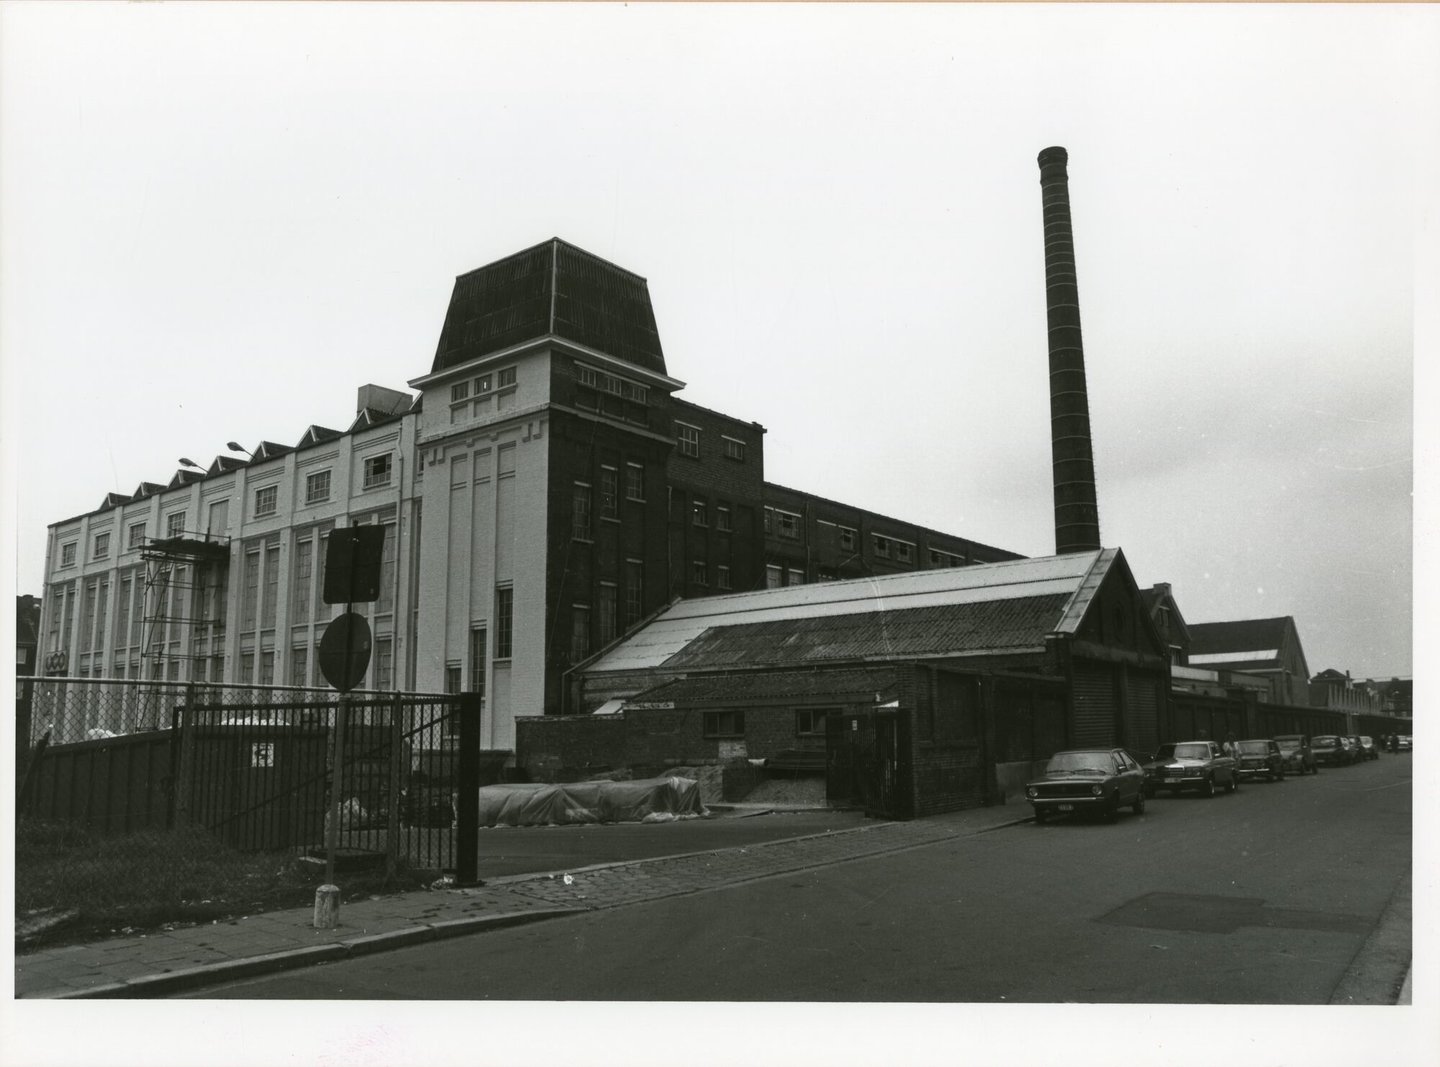 Buitenzicht van textielfabriek UCO Rooigem in Gent